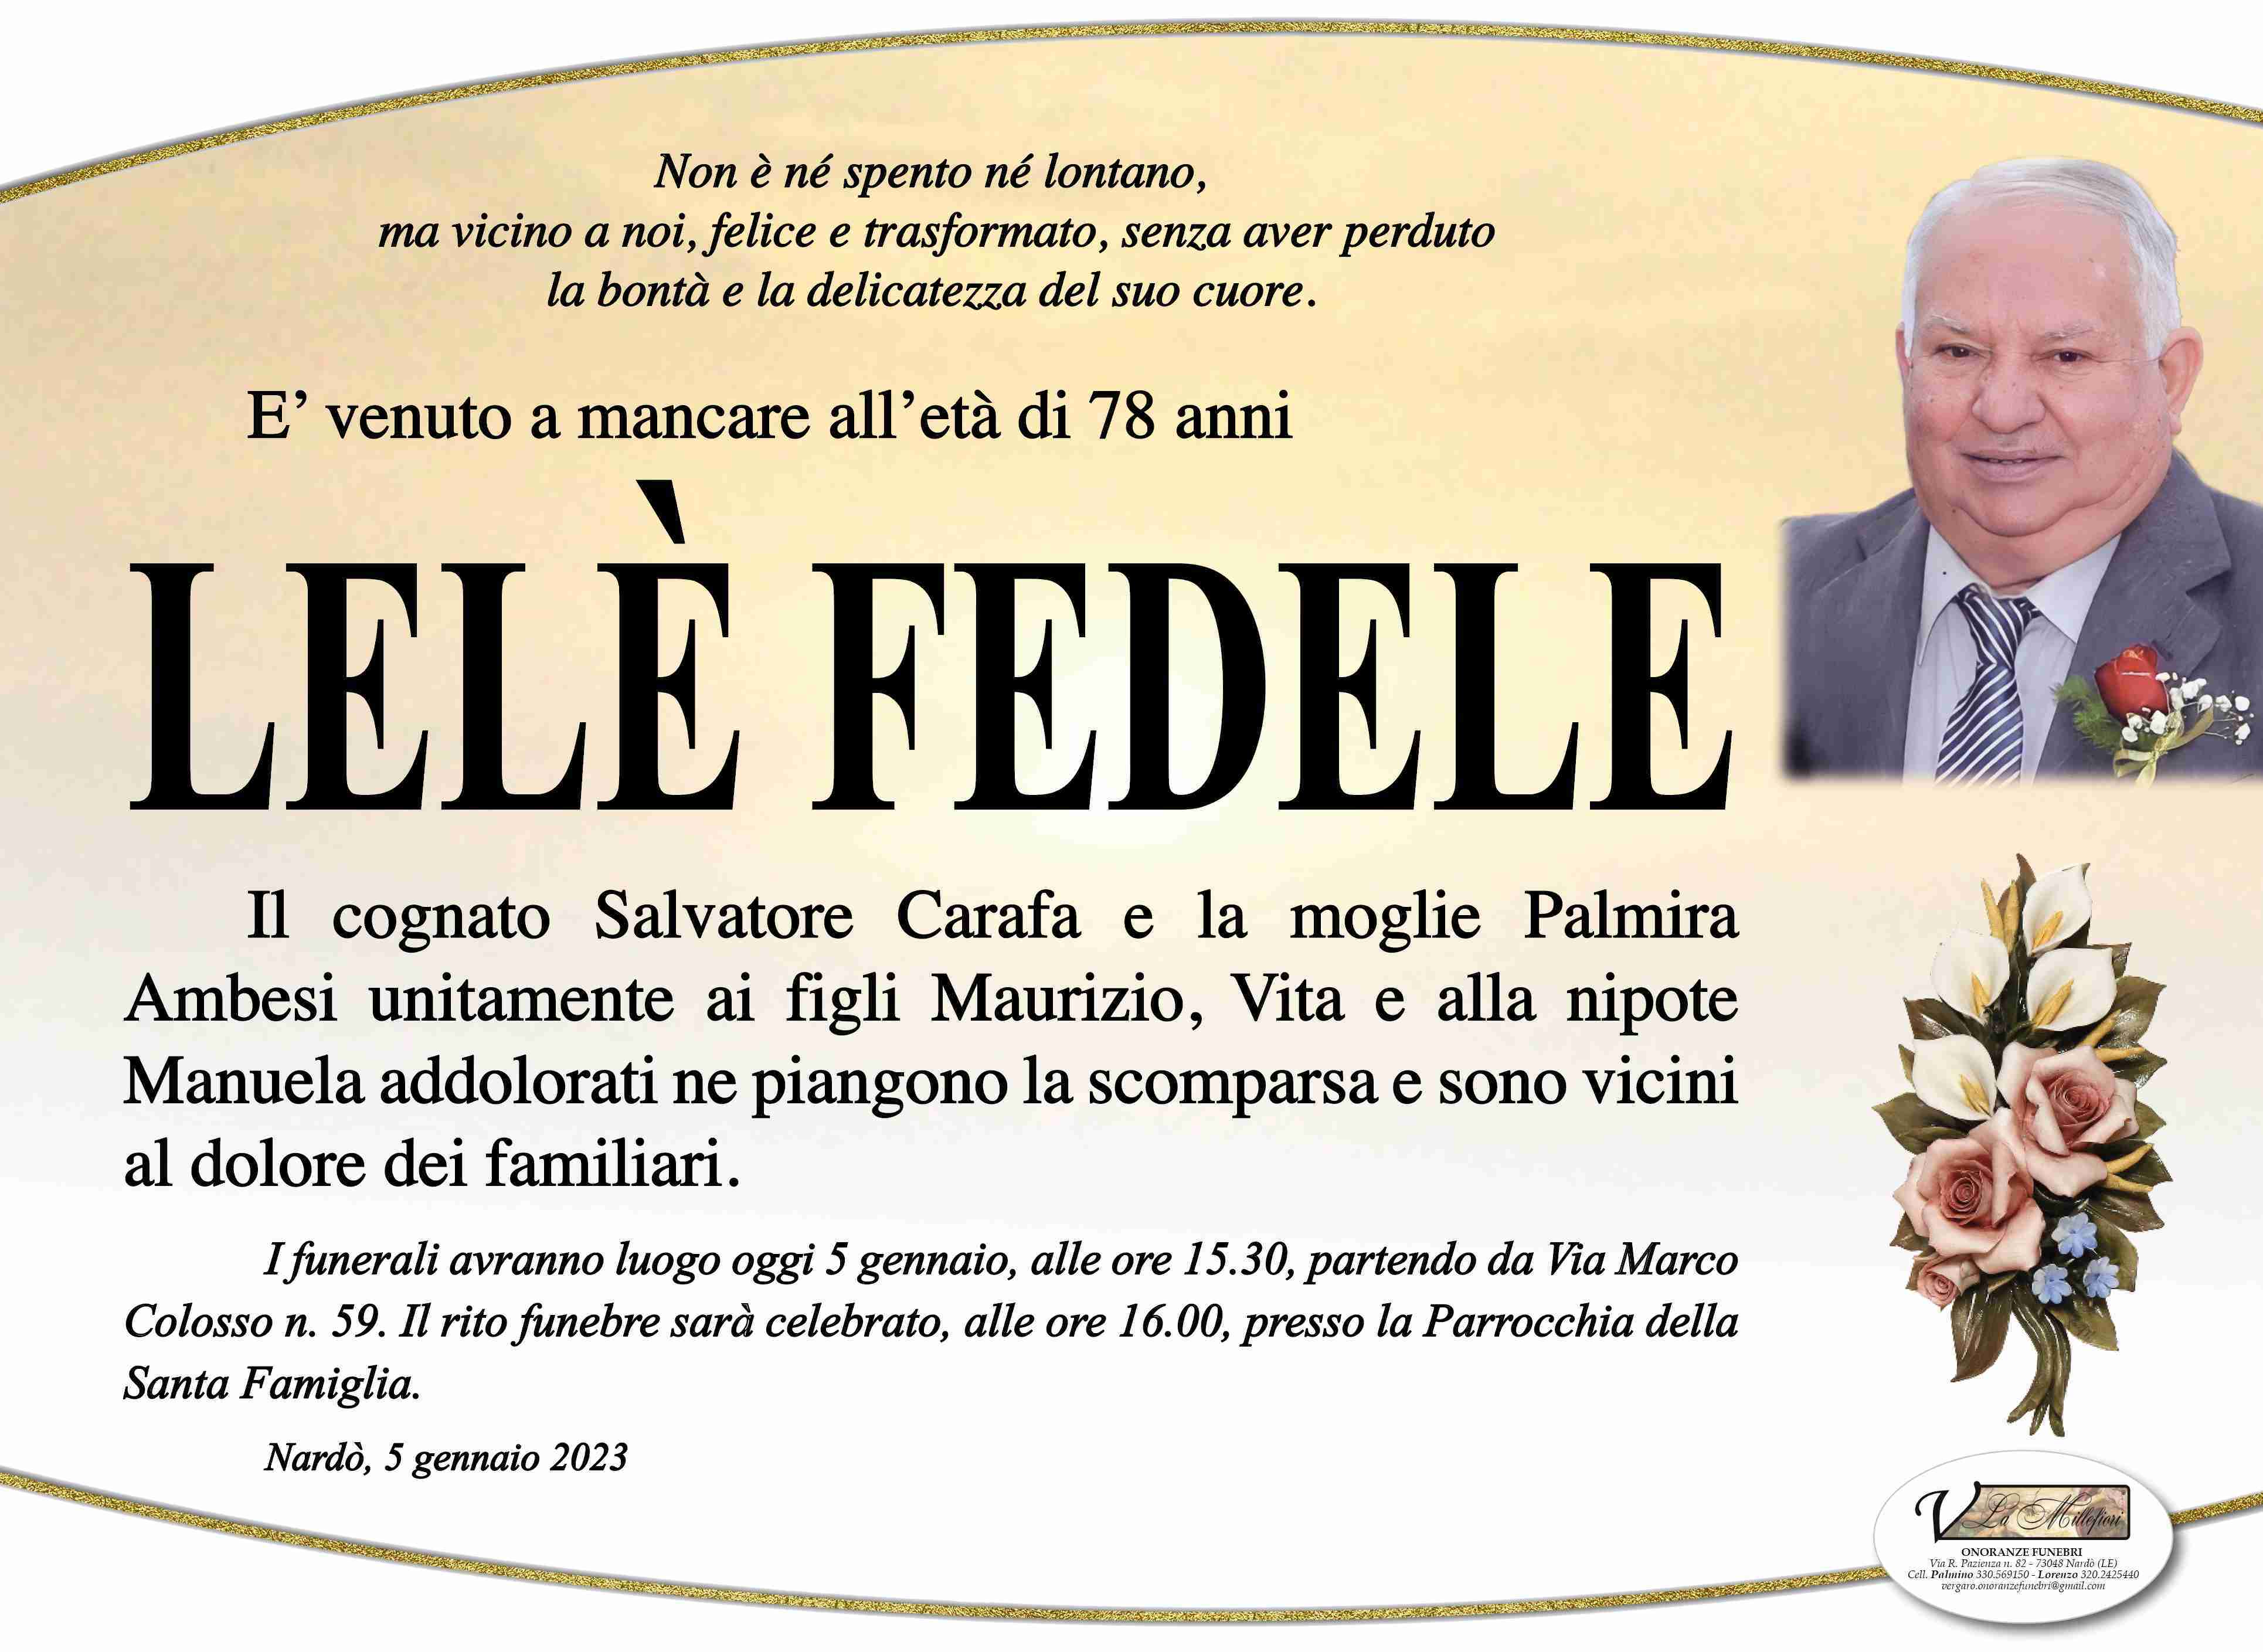 Lelè Fedele